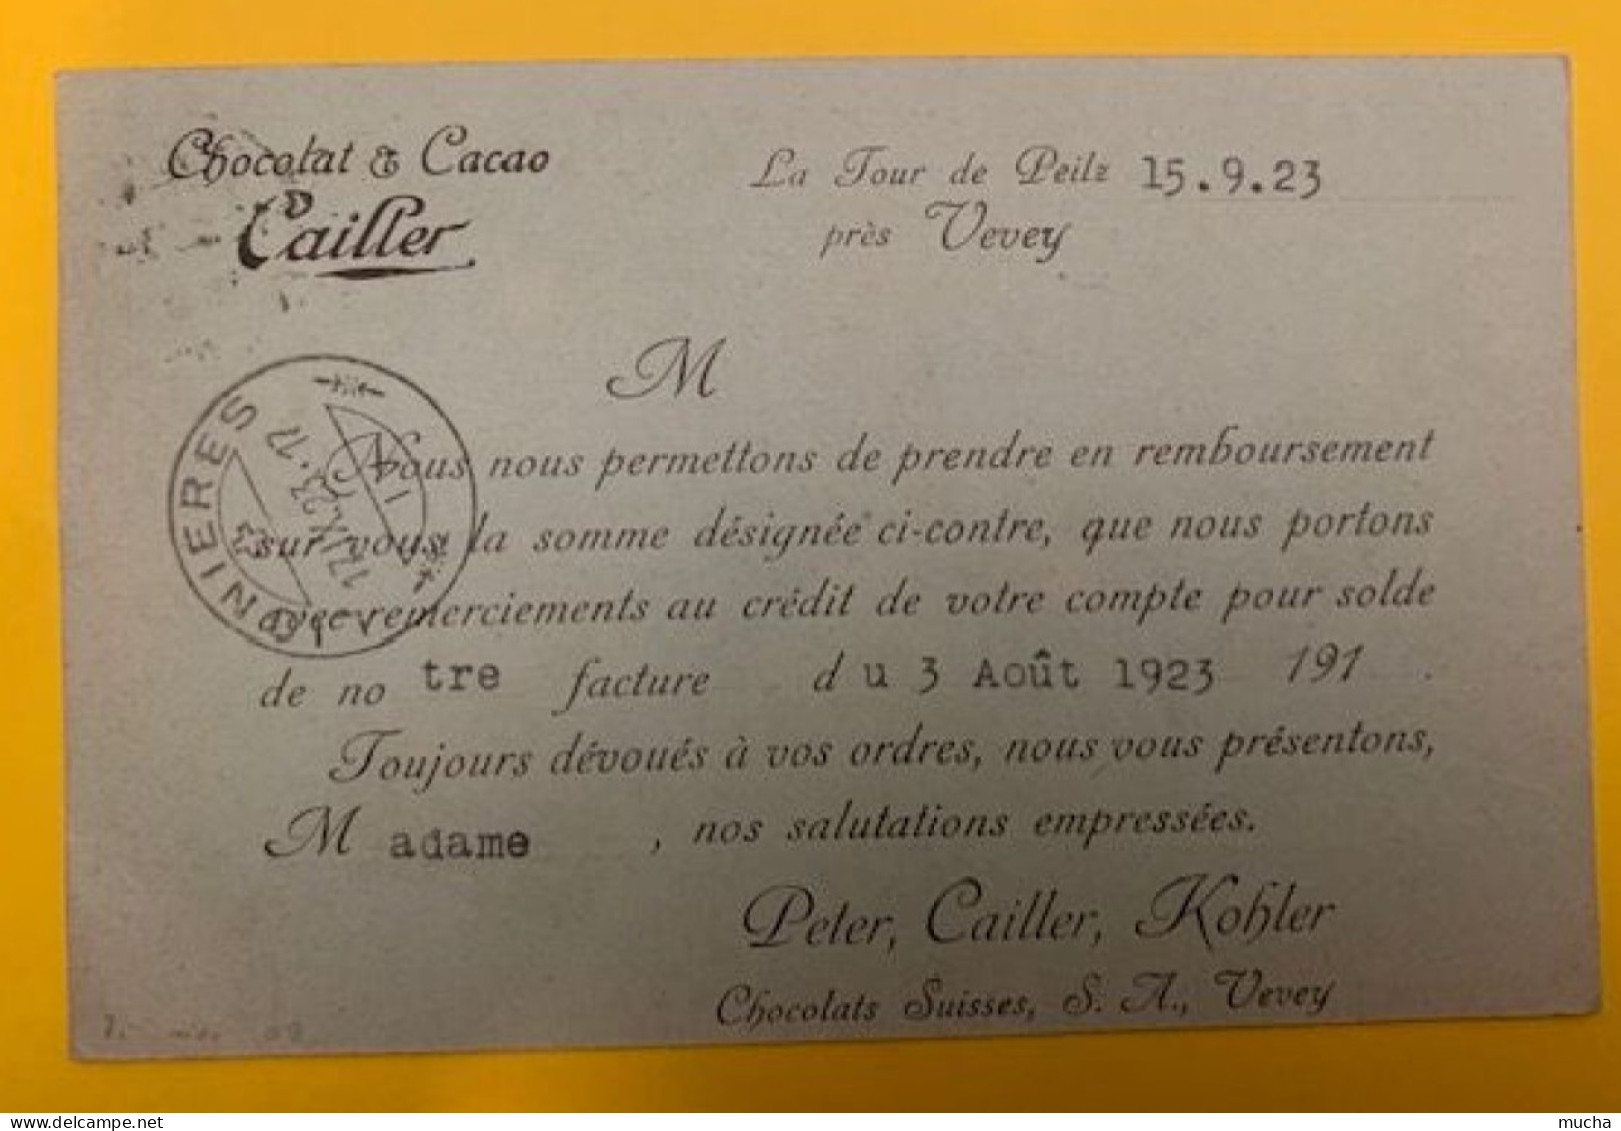 20404 - Carte Remboursement Chocolats Peter, Cailler, Kohler Vevey  La Tour De Peilz 14.09.1923 - Briefe U. Dokumente